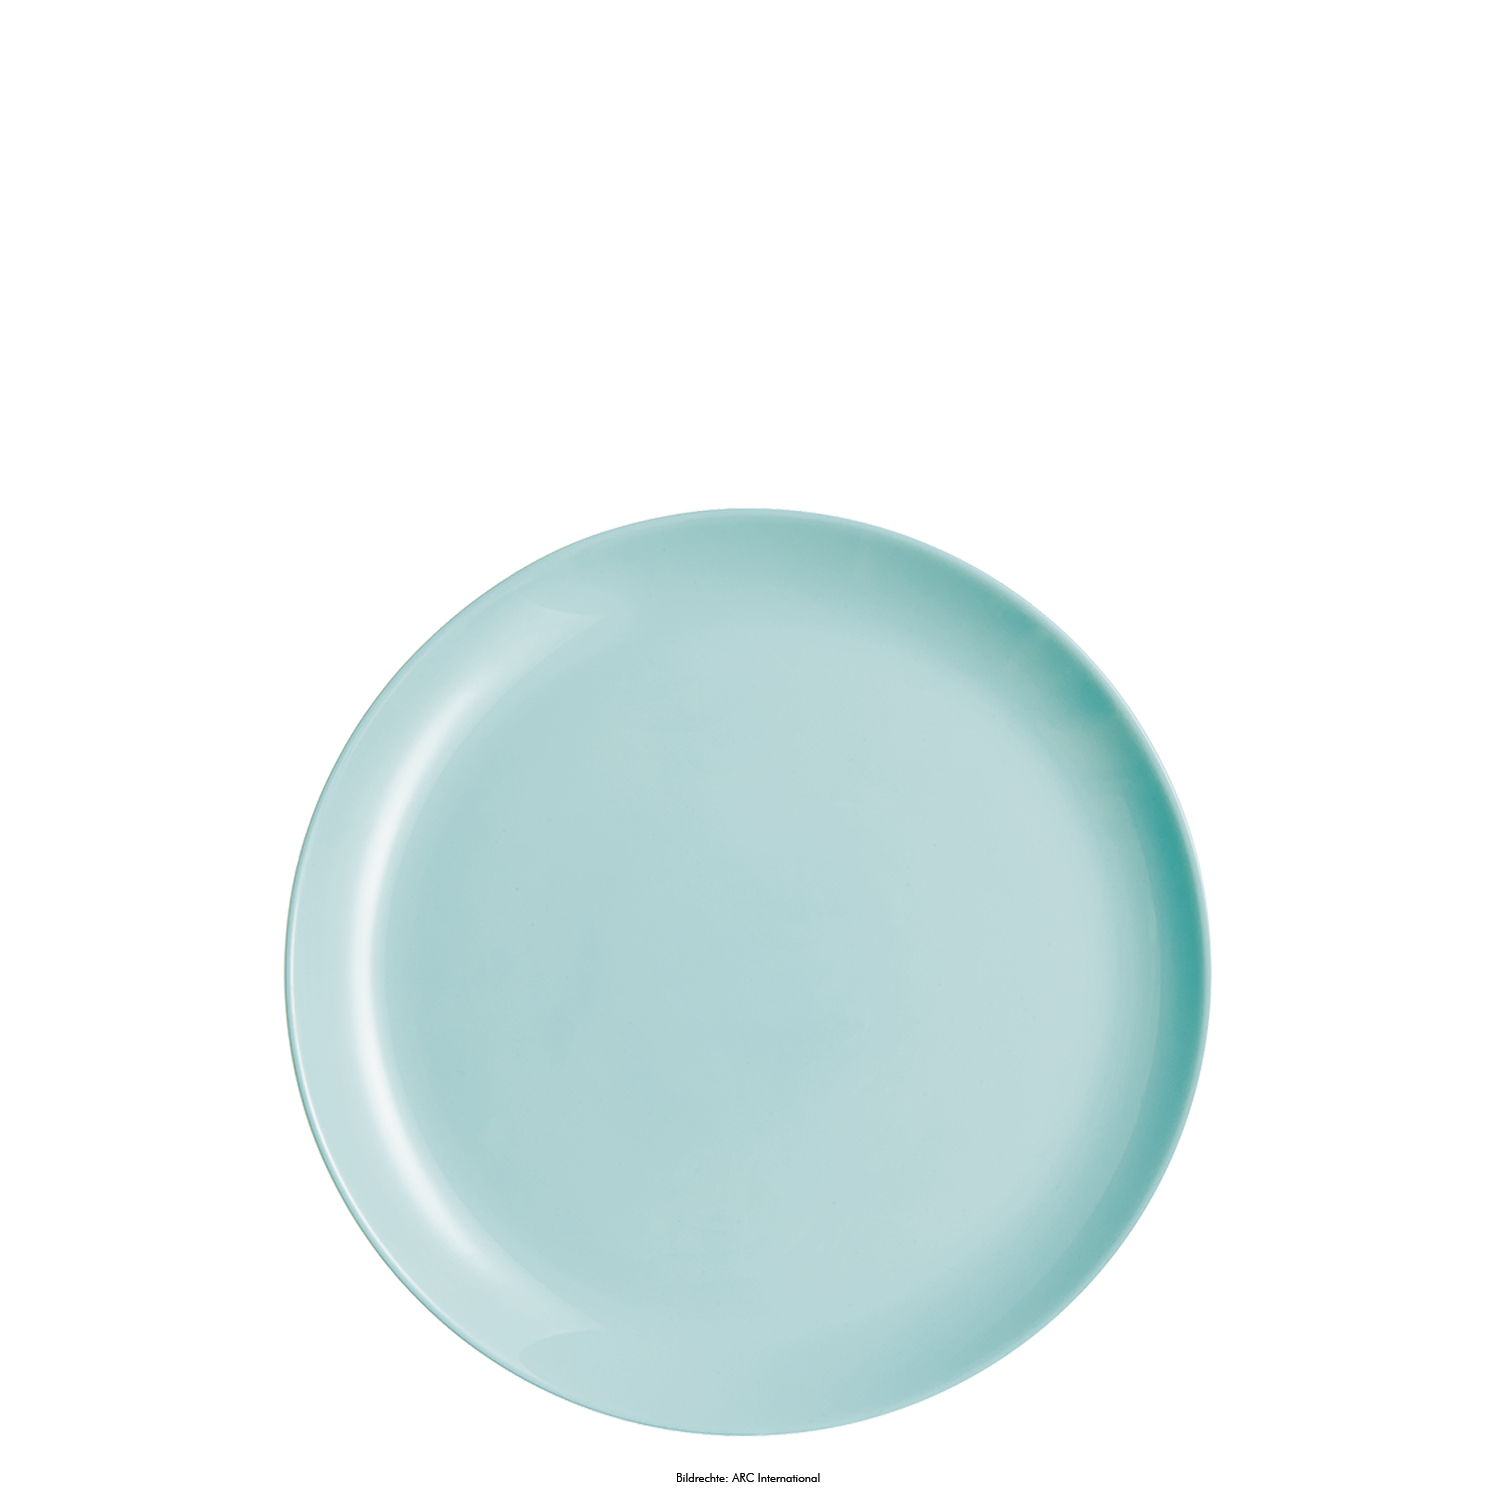 Speiseteller DIWALI, Durchm. 25 cm, Farbe: mint, Opalglas (gehärtet), in Coupteller-Form, ohne breite "Fahne"